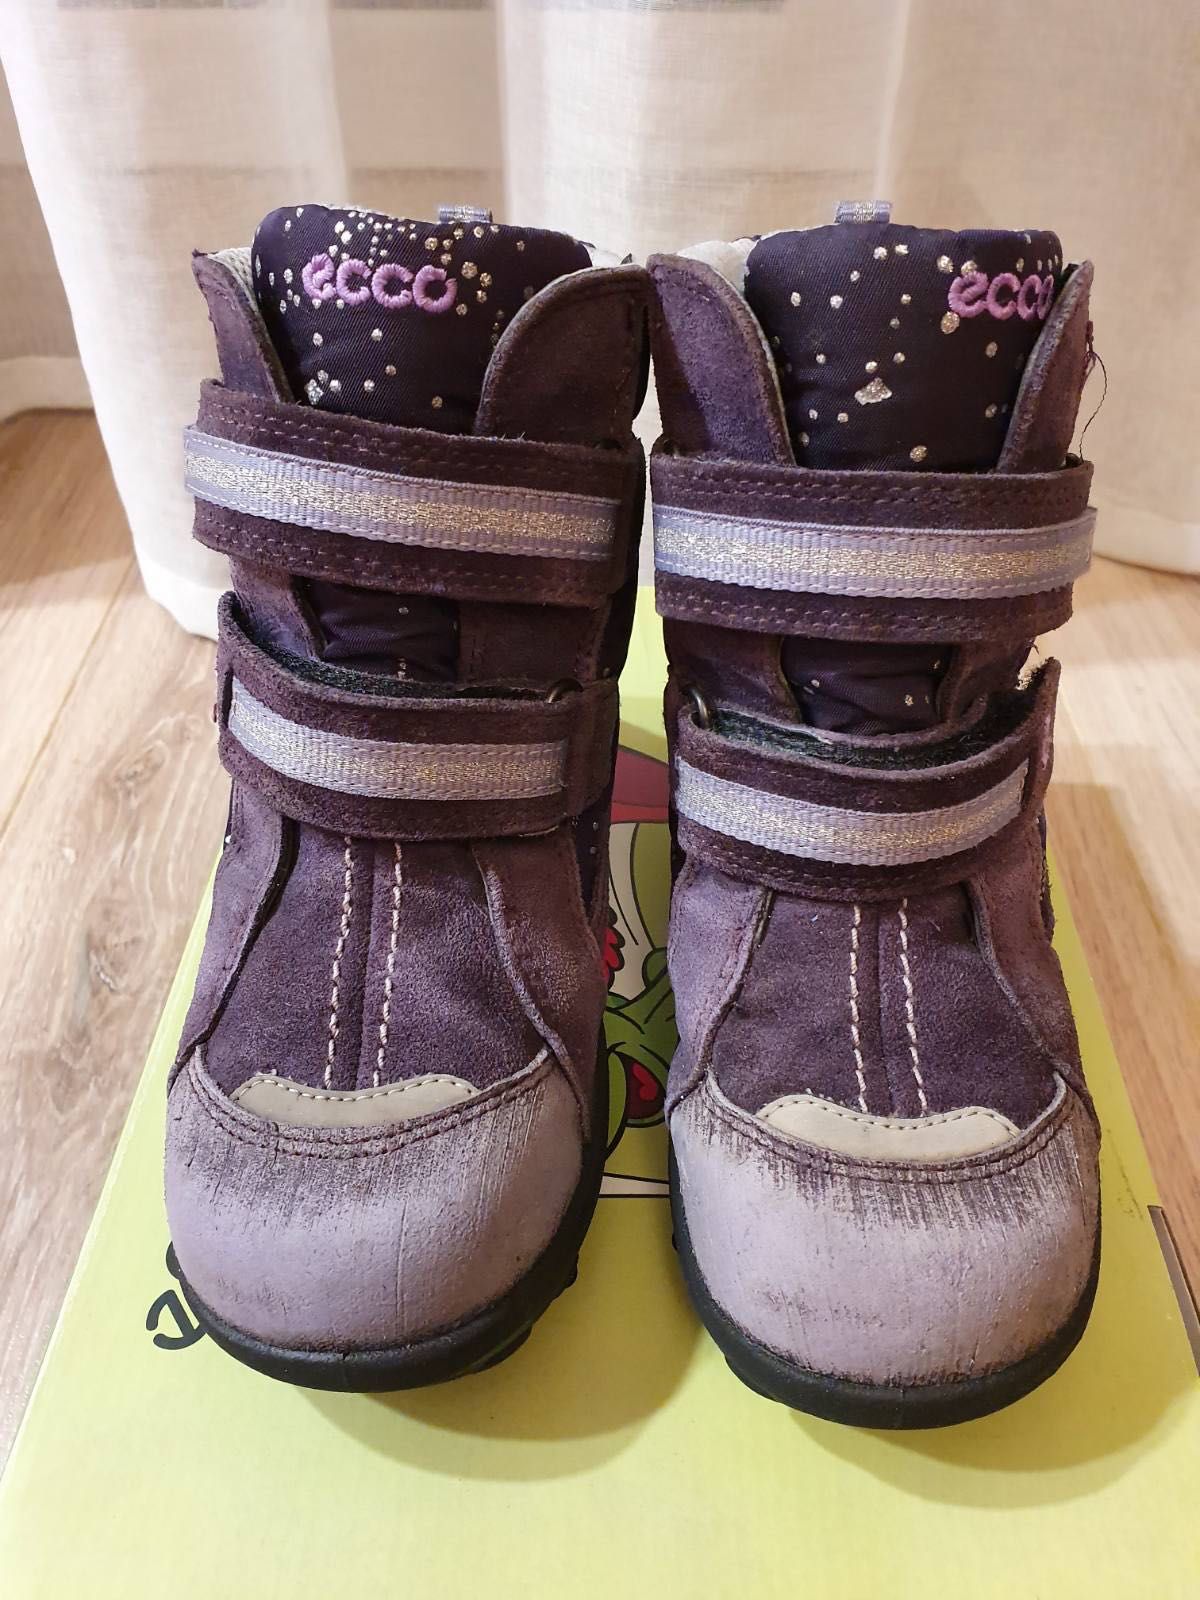 Обувь зимняя-гортексы Ecco для девочки размер 28